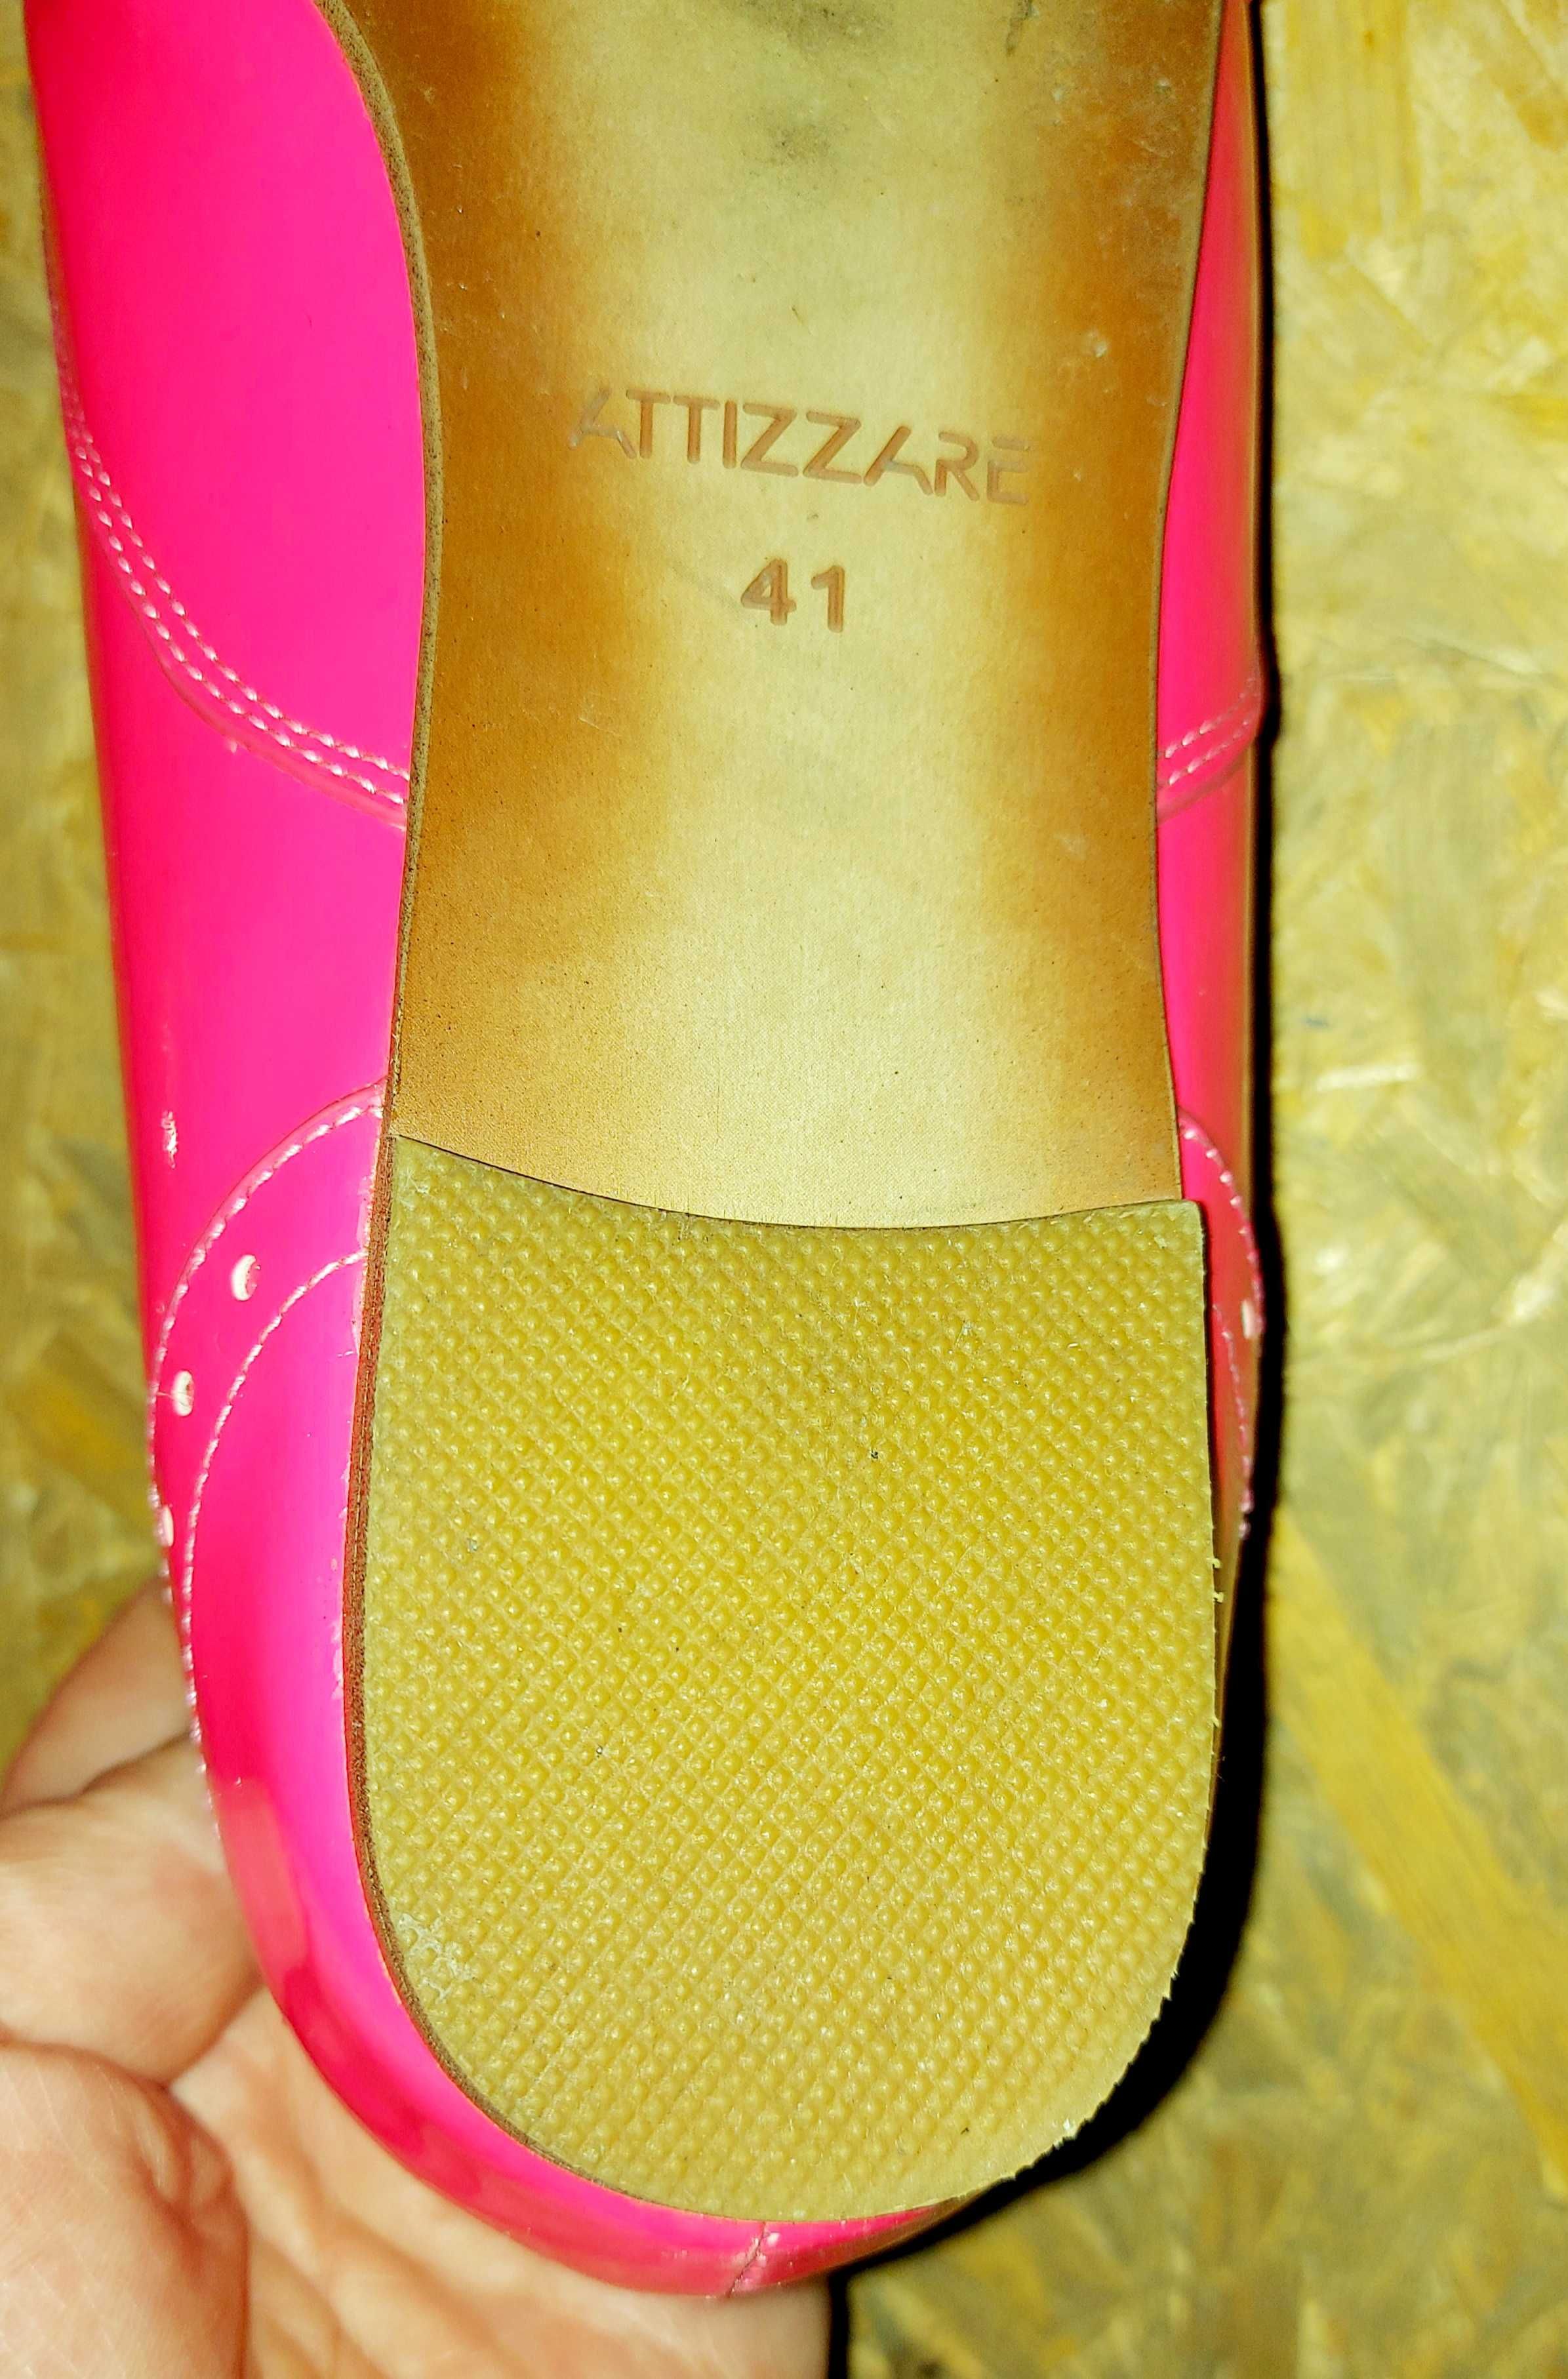 Туфли неоновые розовые. Р-р. 41  Attizzare (стелька 26 см.)